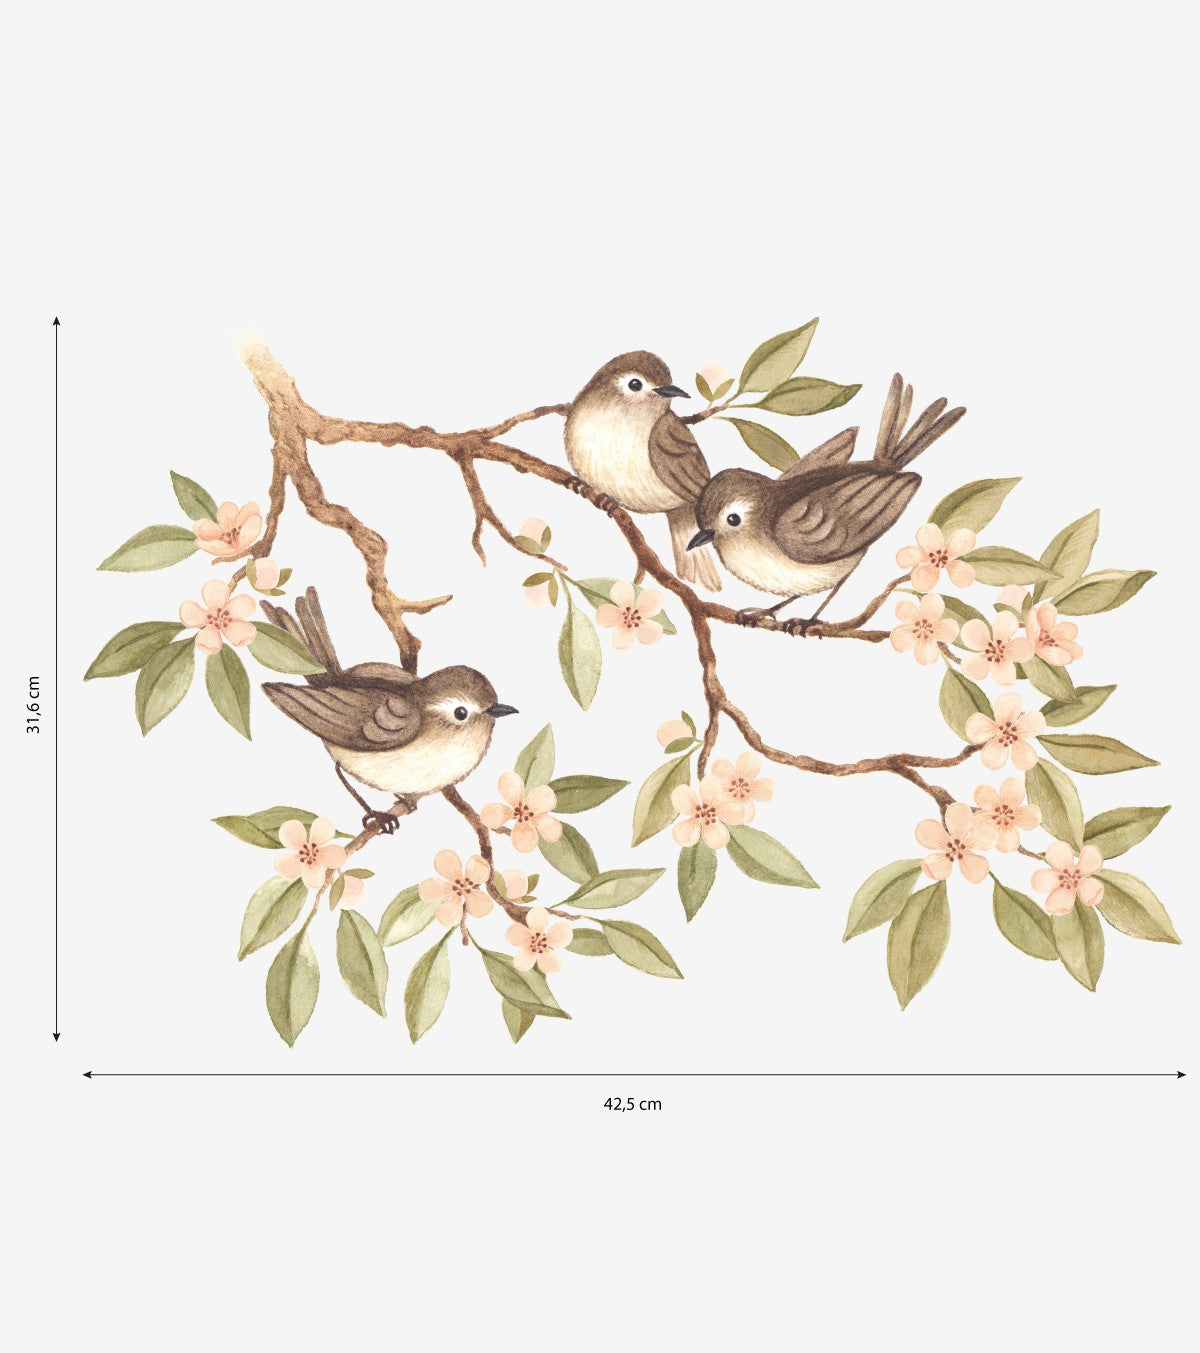 OH DEER - Wall decals murals - Flowering branch and birds